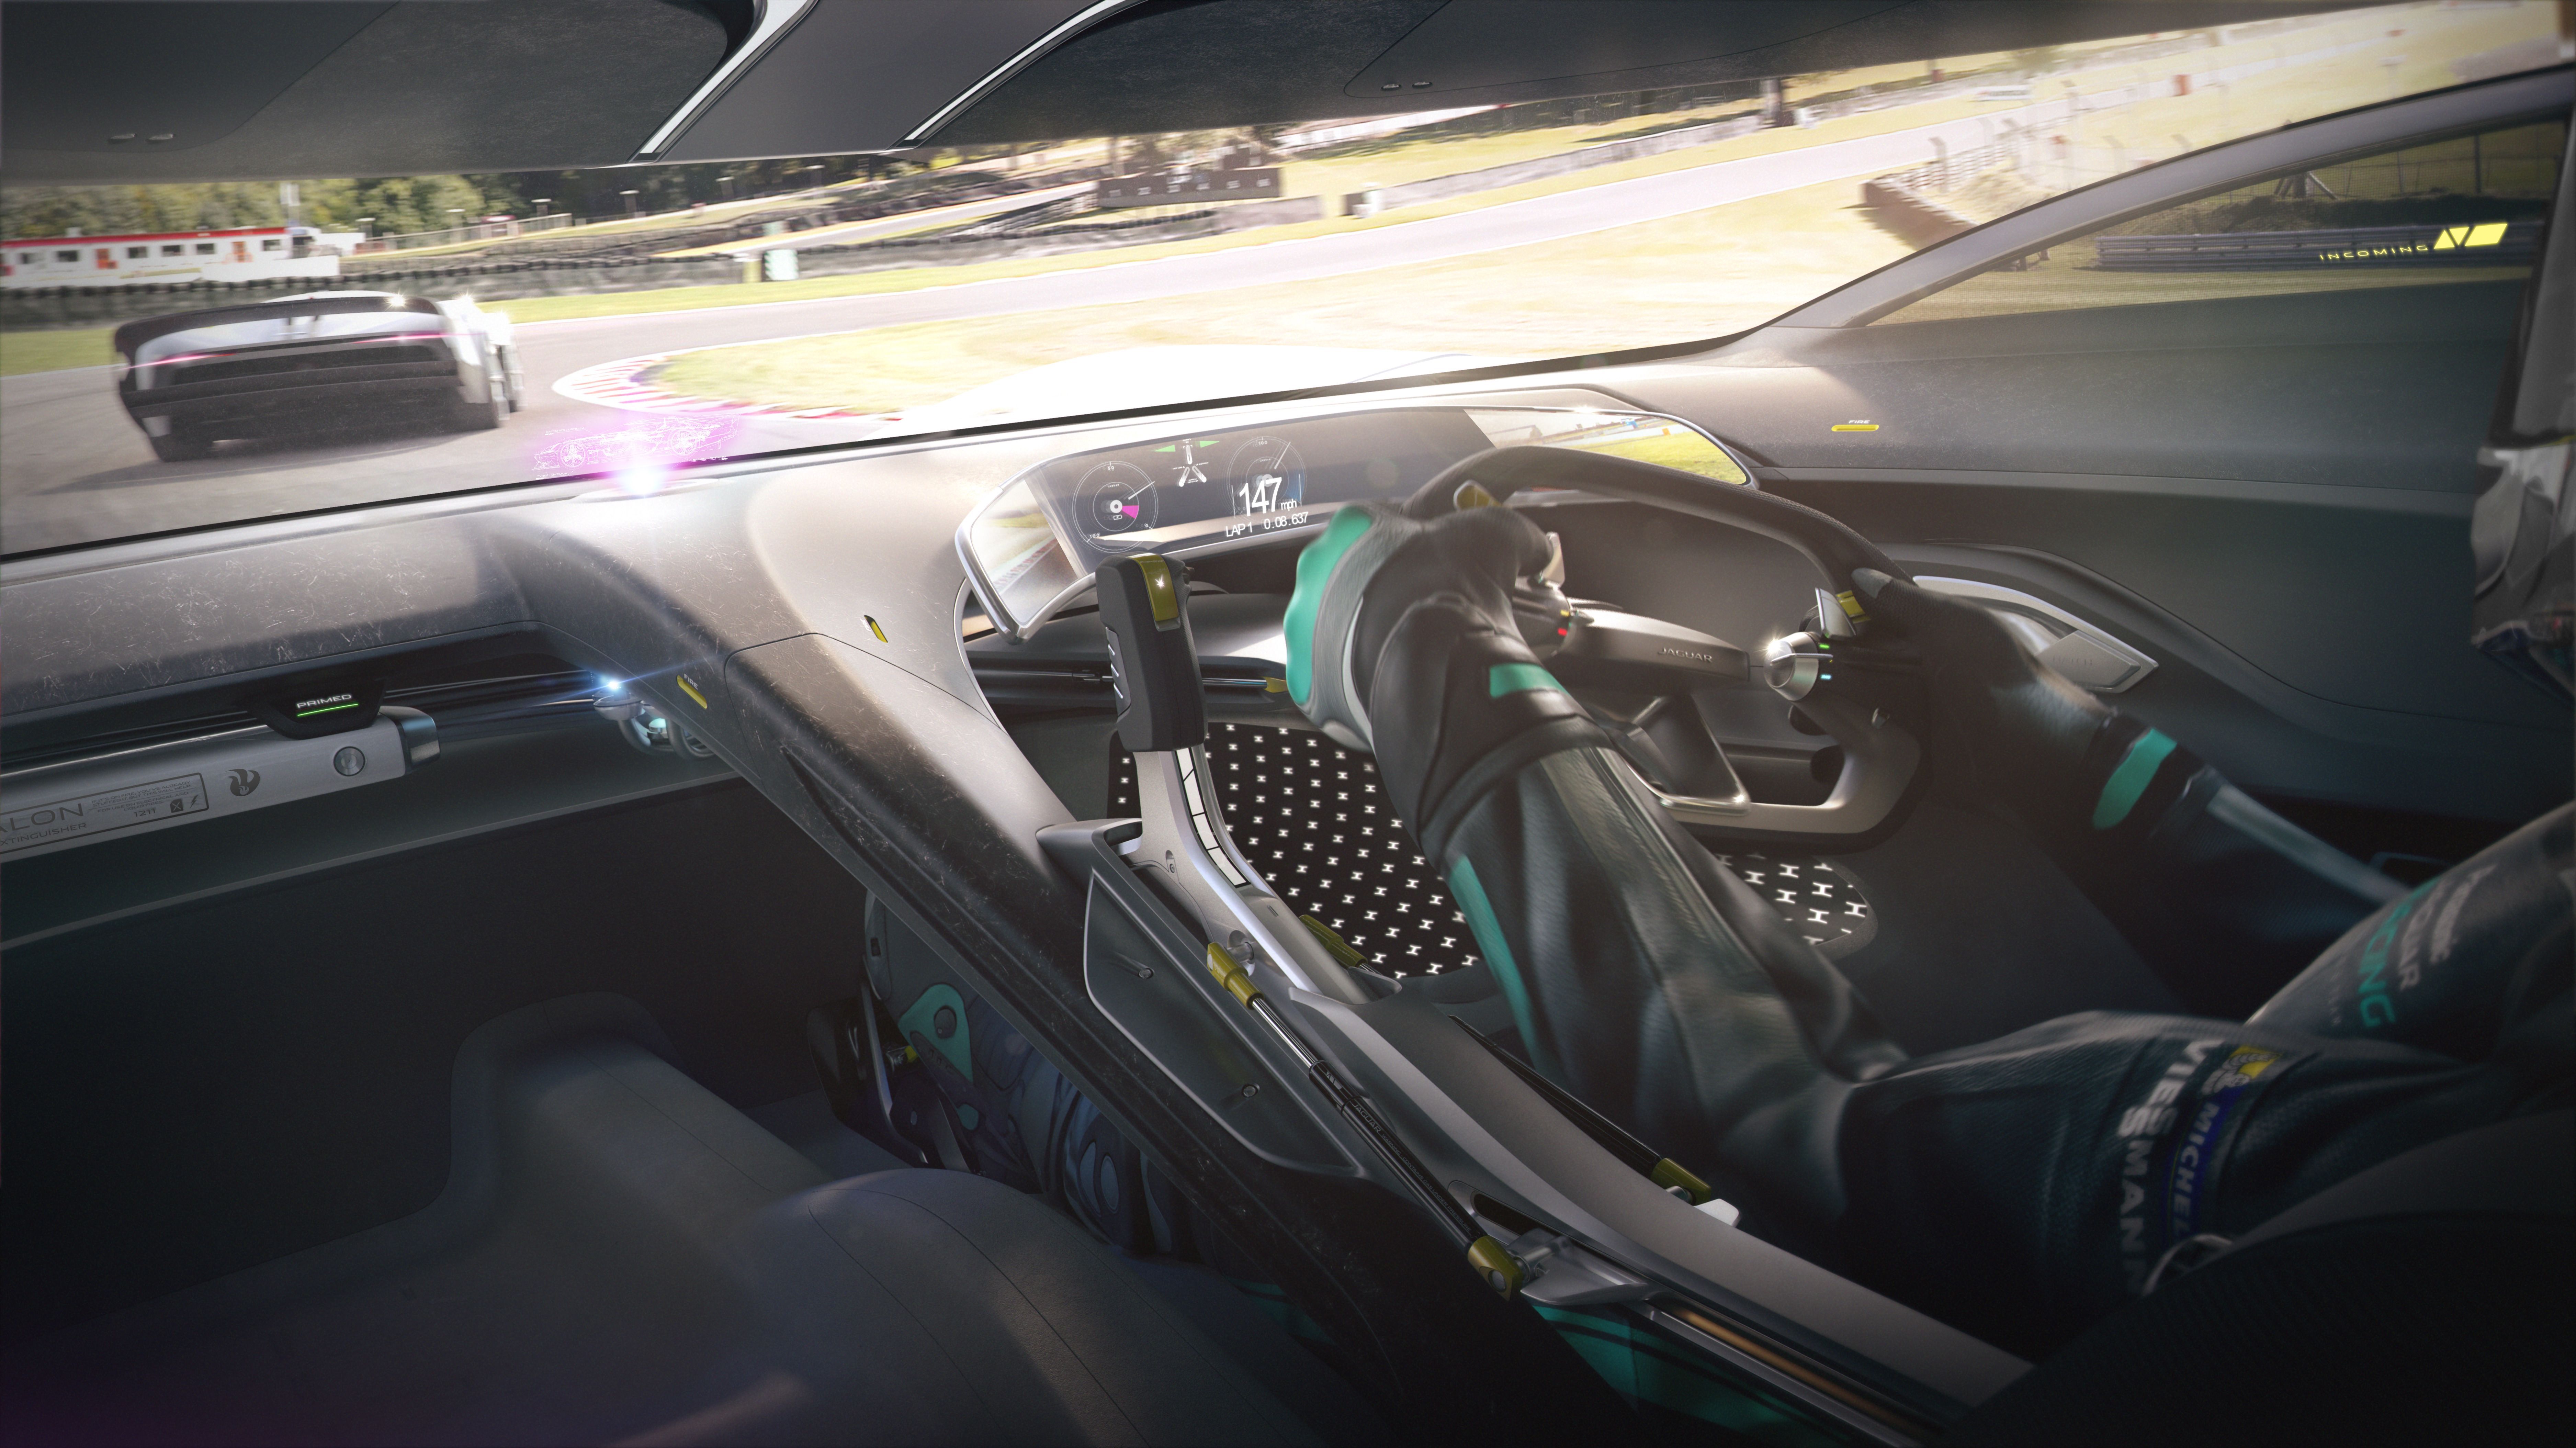 2019 Jaguar Vision Gran Turismo